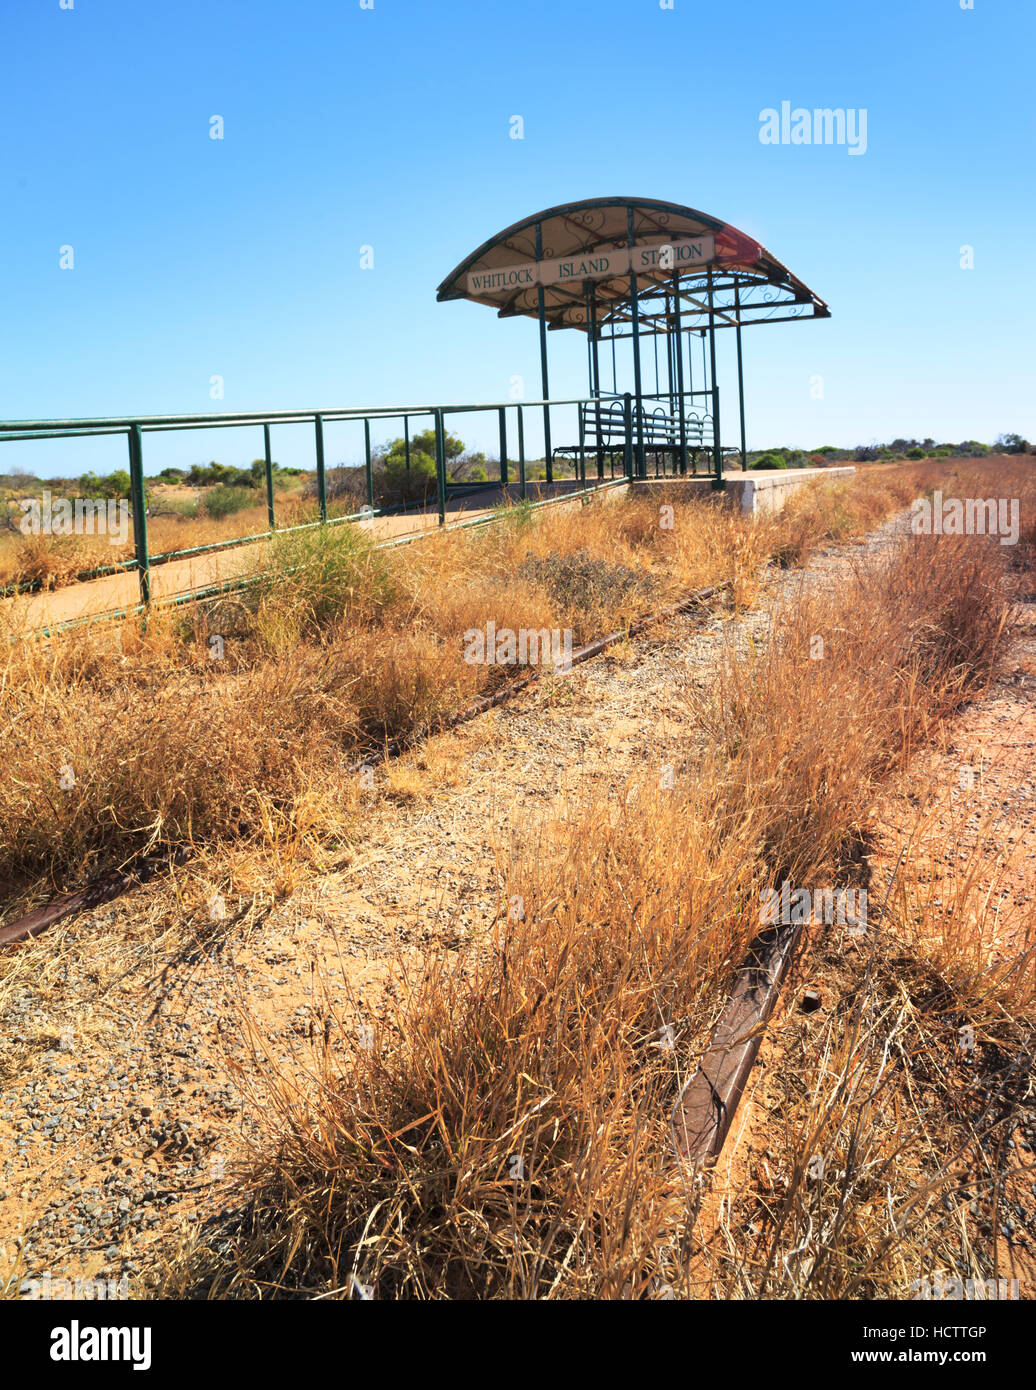 La station de tramway de l'île abandonnée Whitlock à Carnarvon, Australie occidentale Banque D'Images